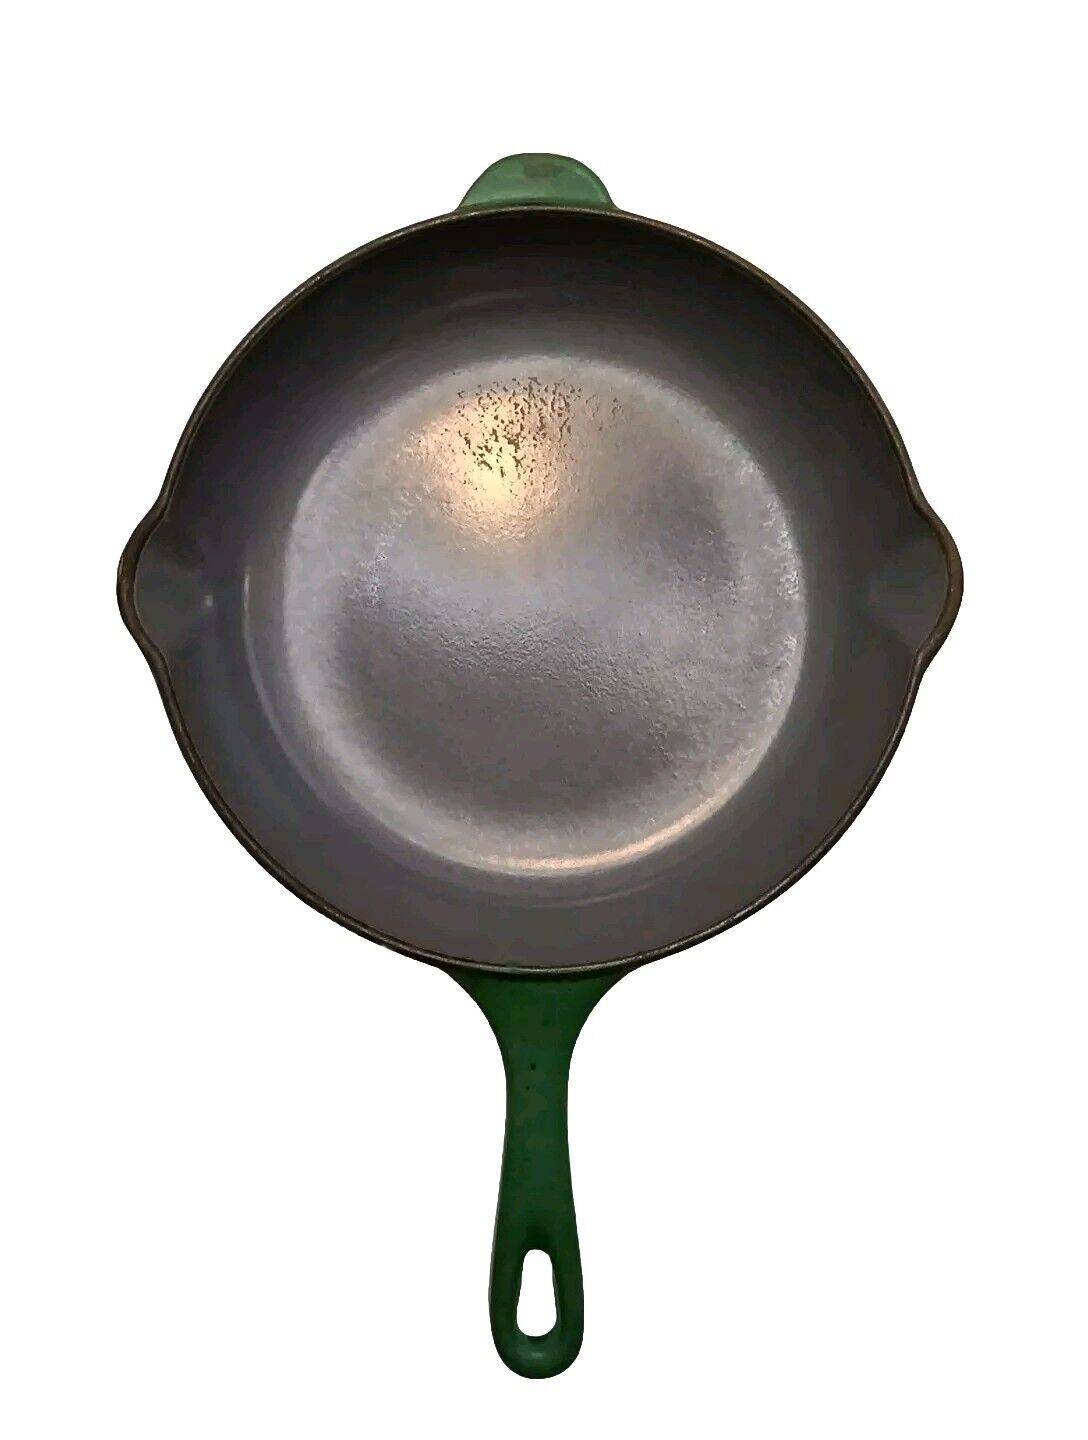 Le Creuset France 9” Double Spout Cast Iron Pan Skillet #23 Emerald Green 